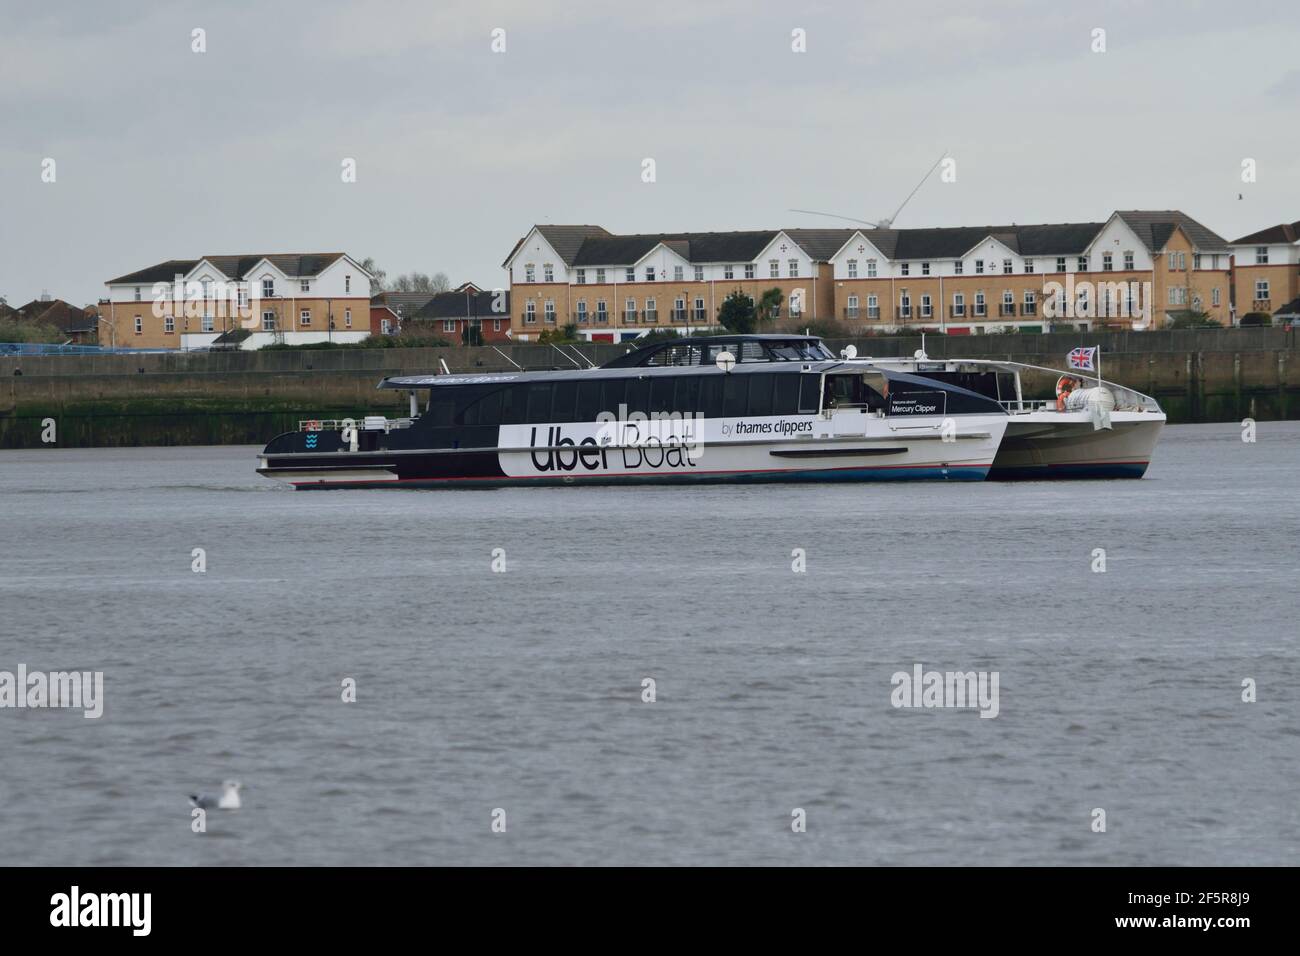 Uber Boat by Thames Clipper River bus service Vessel Mercury Clipper fuori sul Tamigi Foto Stock